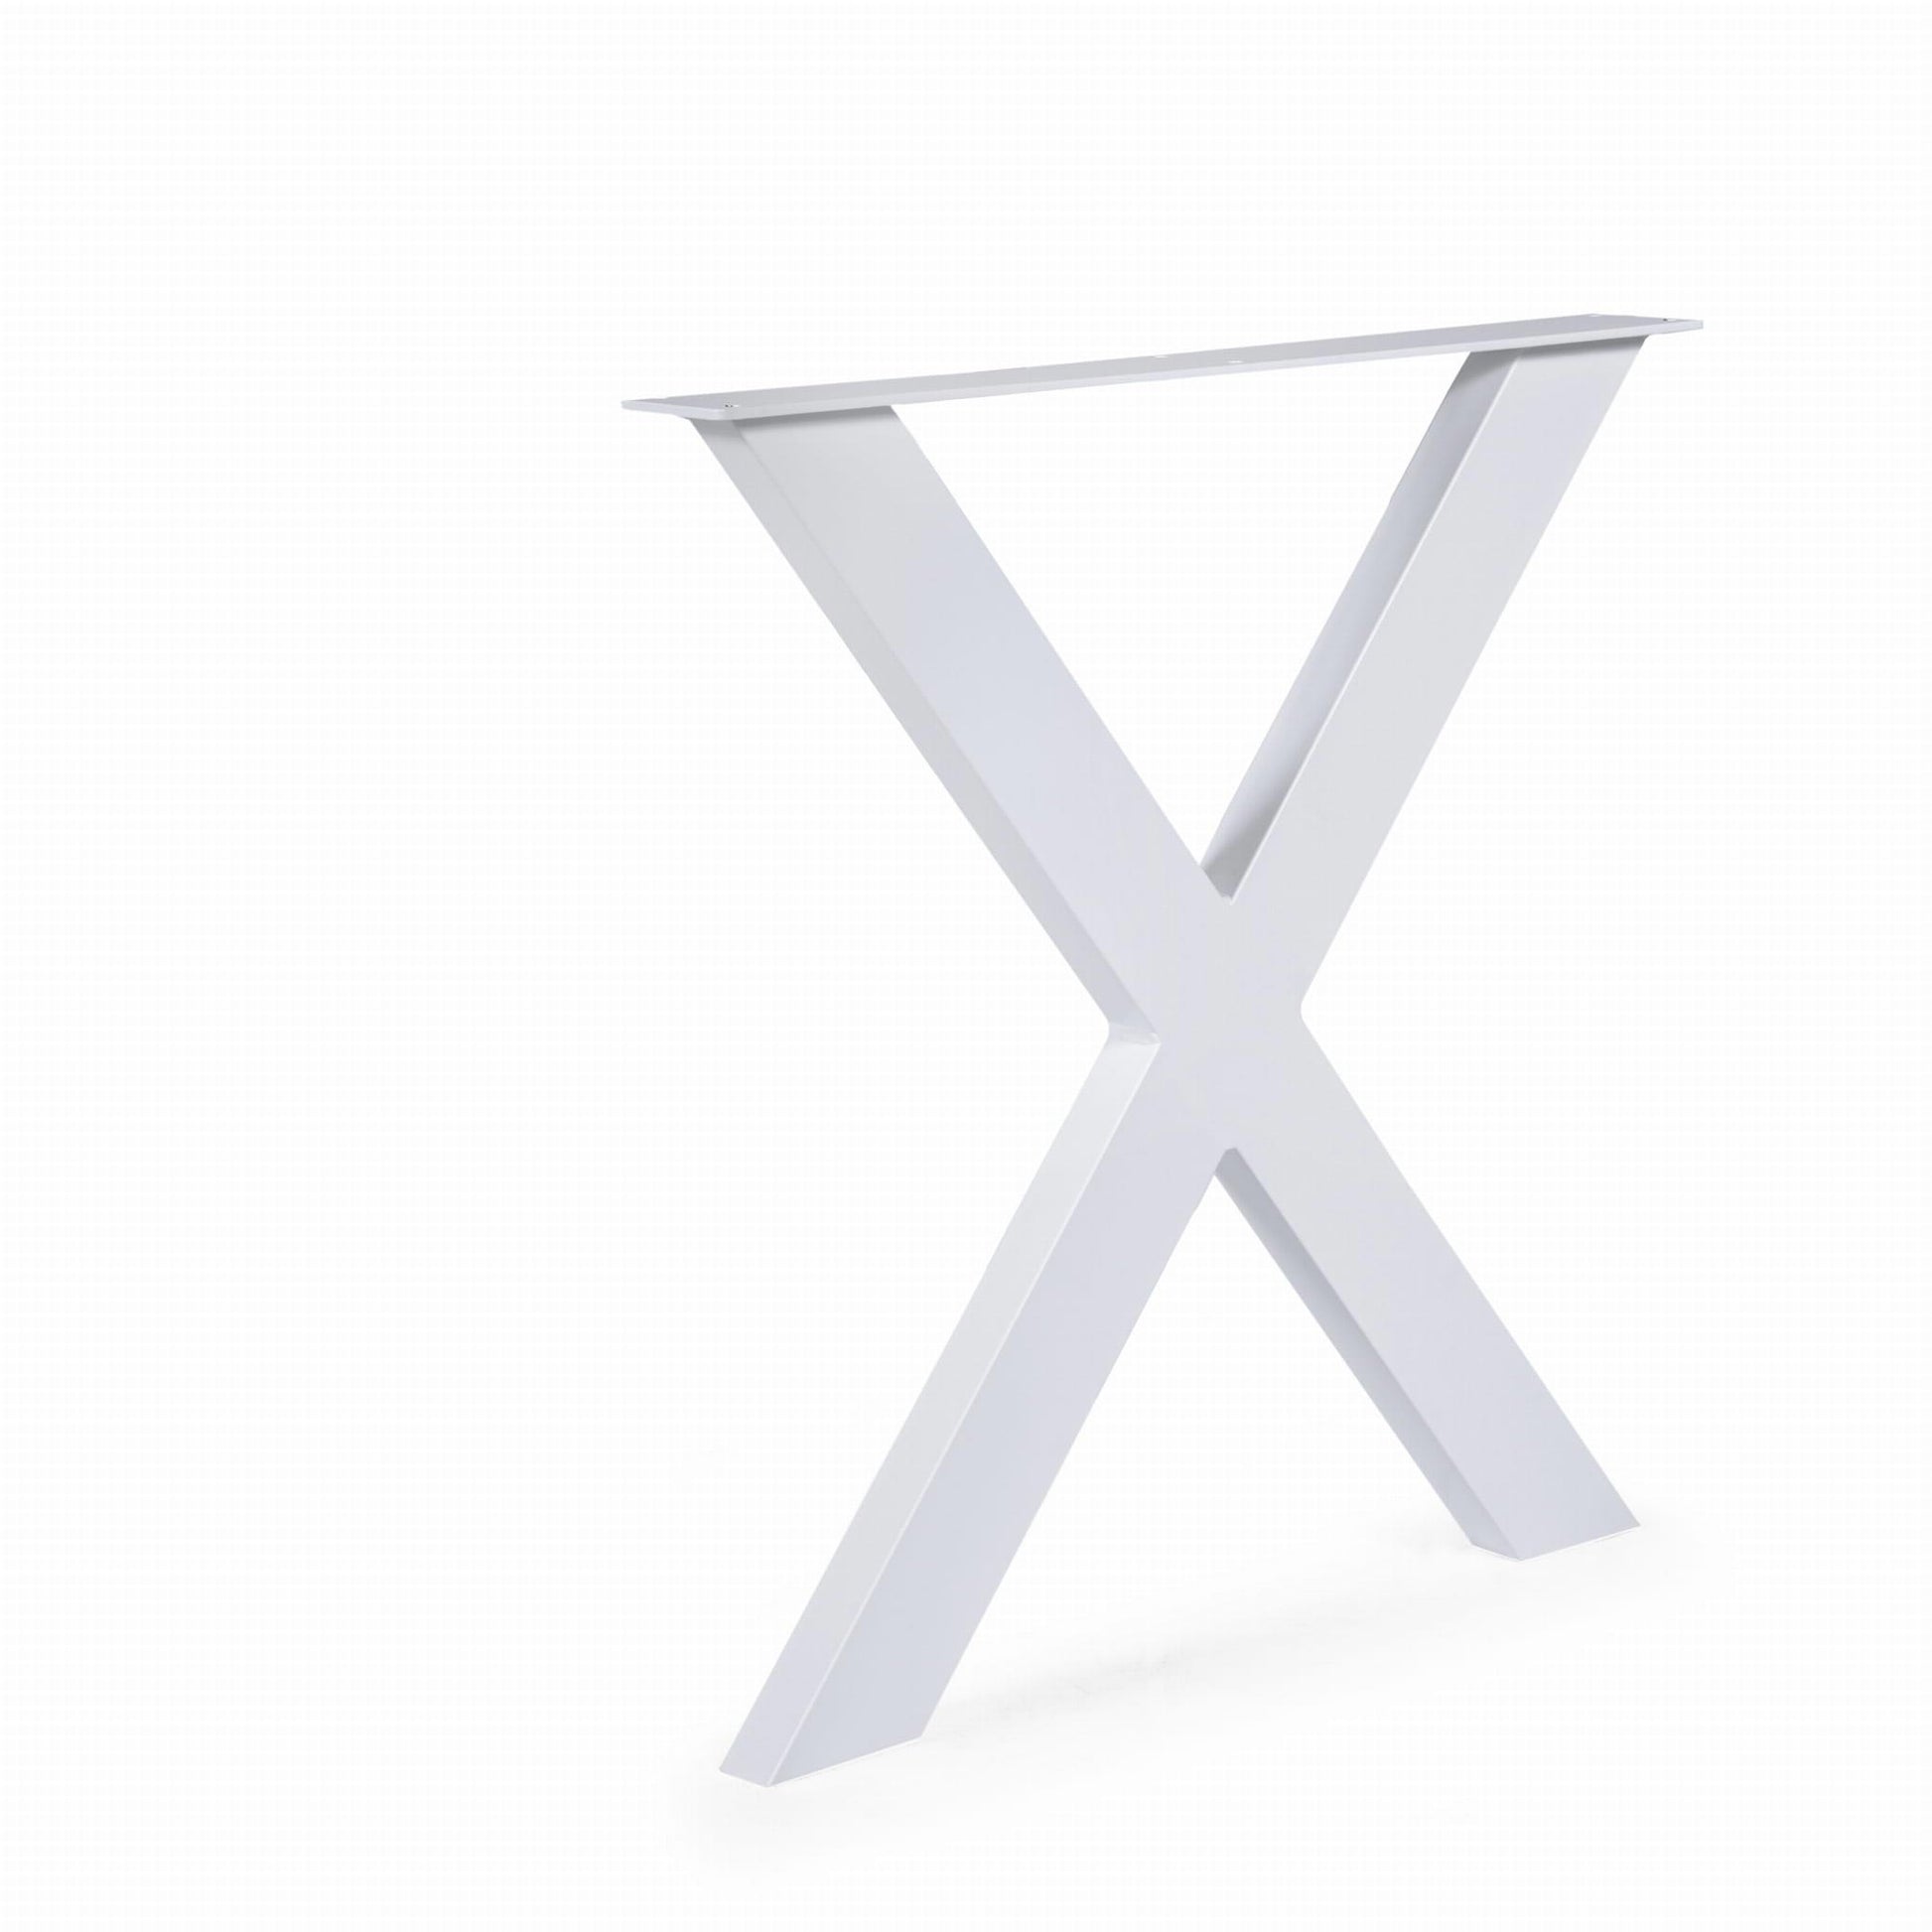 Metallinen Pöydänjalka X 2kpl 100x40 Valkoinen upea malli